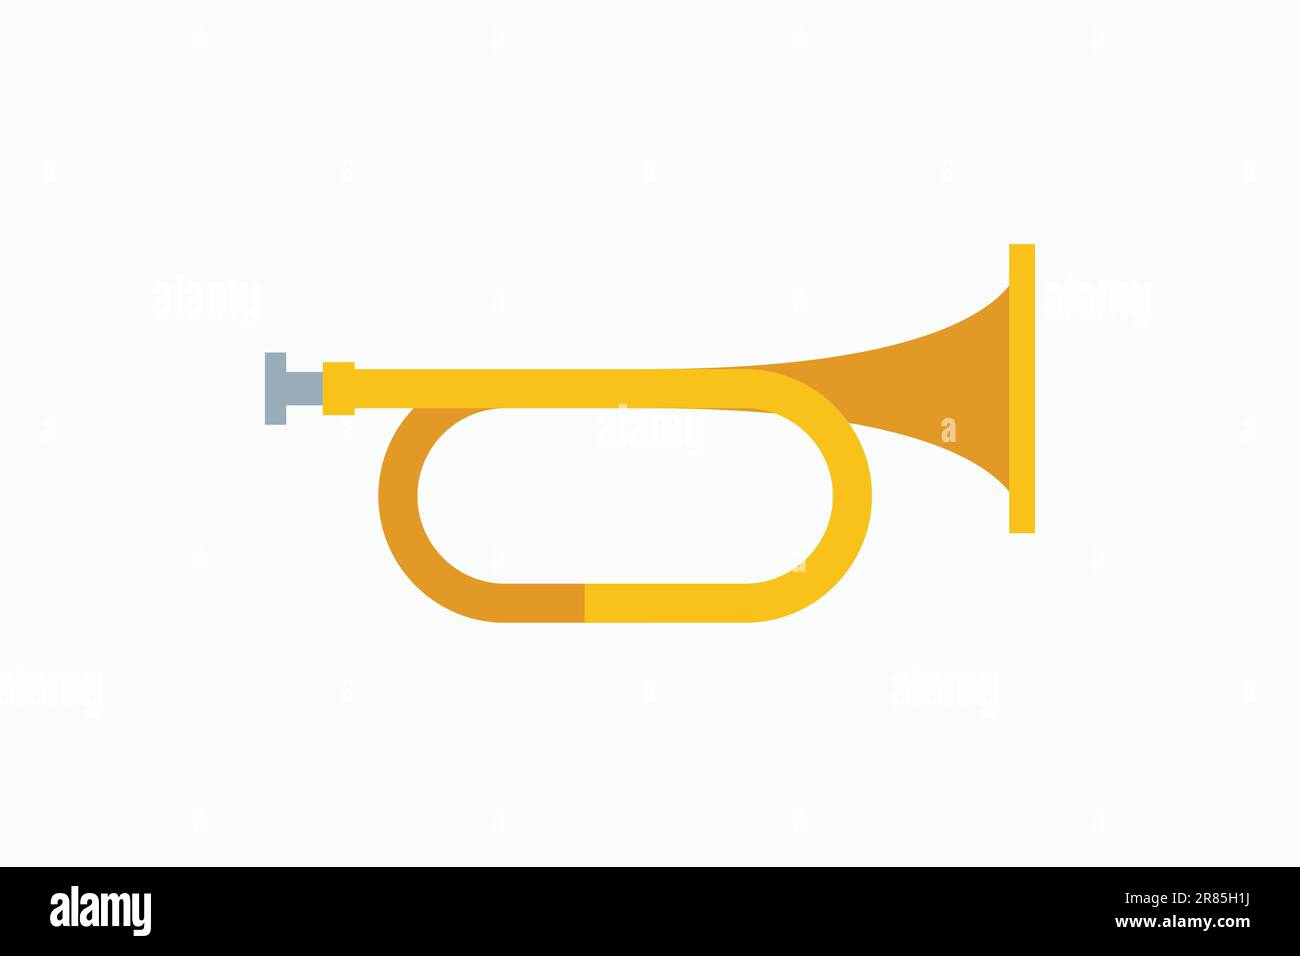 Trompeta Musical De Juguete Amarillo. Sobre Un Fondo Blanco